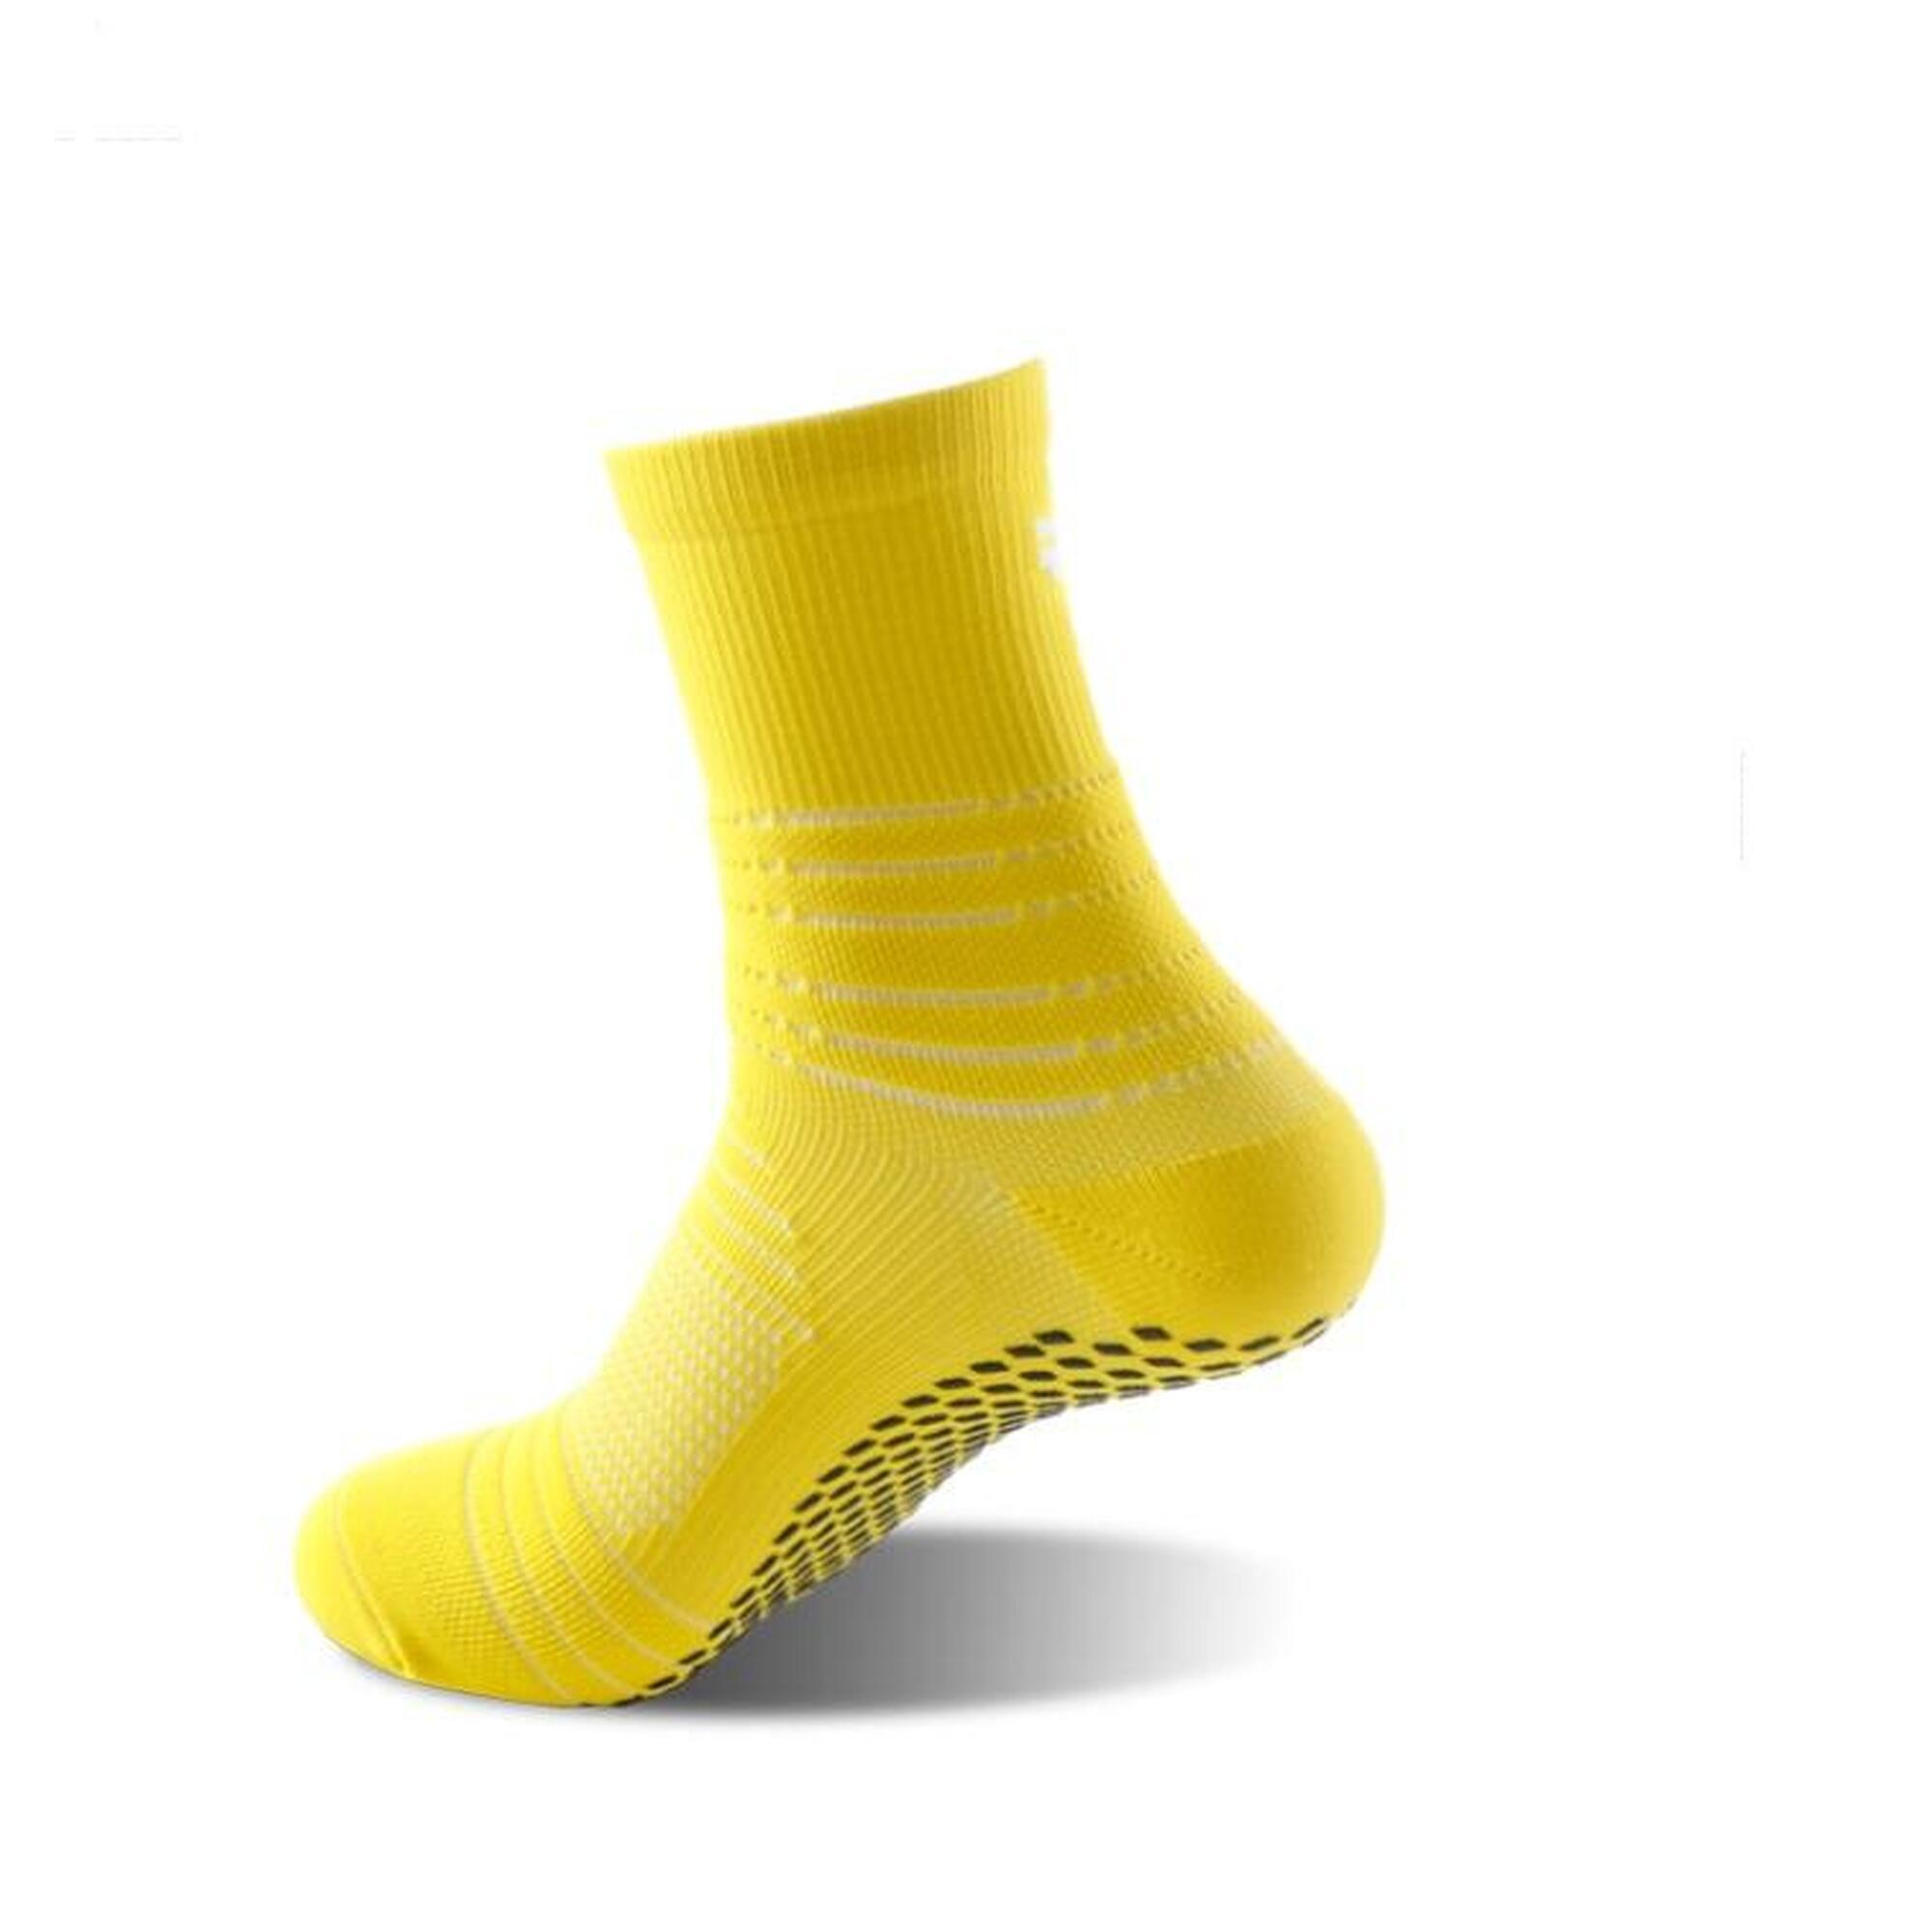 G-ZOX Tech 足球防滑襪 3對裝 (紅色 + 黃色 + 藍色 - 中碼)